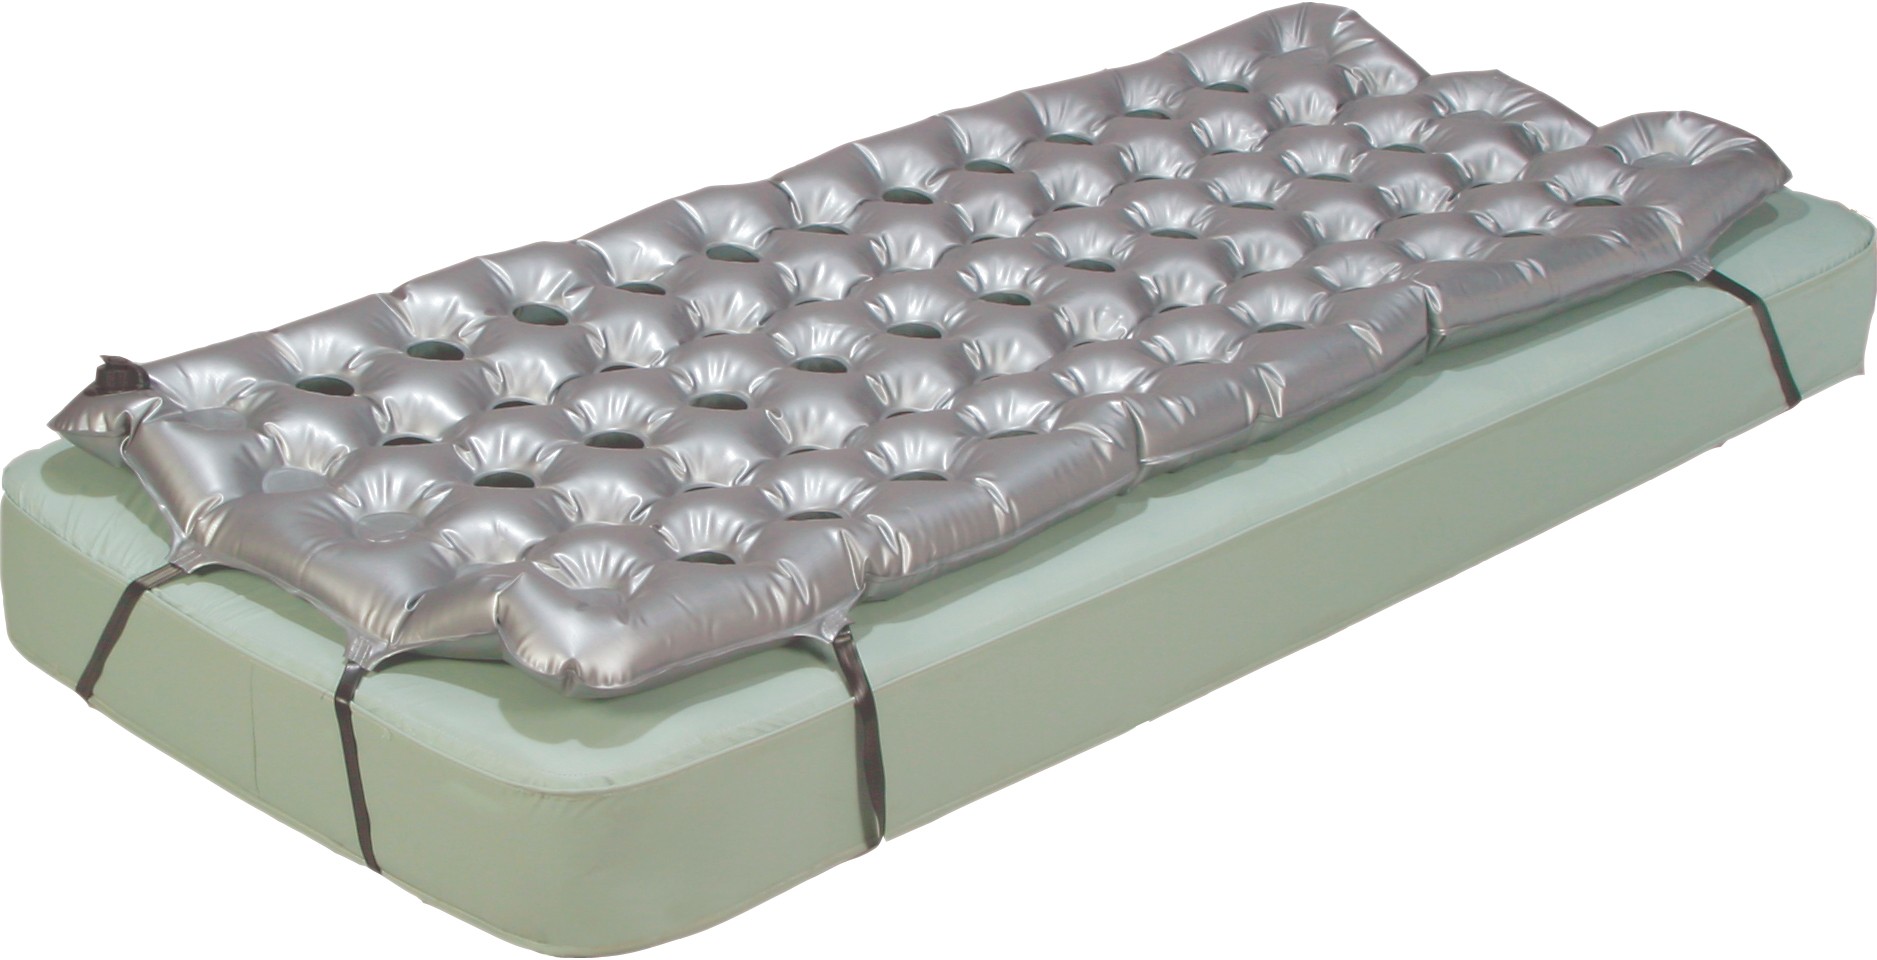 dynaform static air mattress